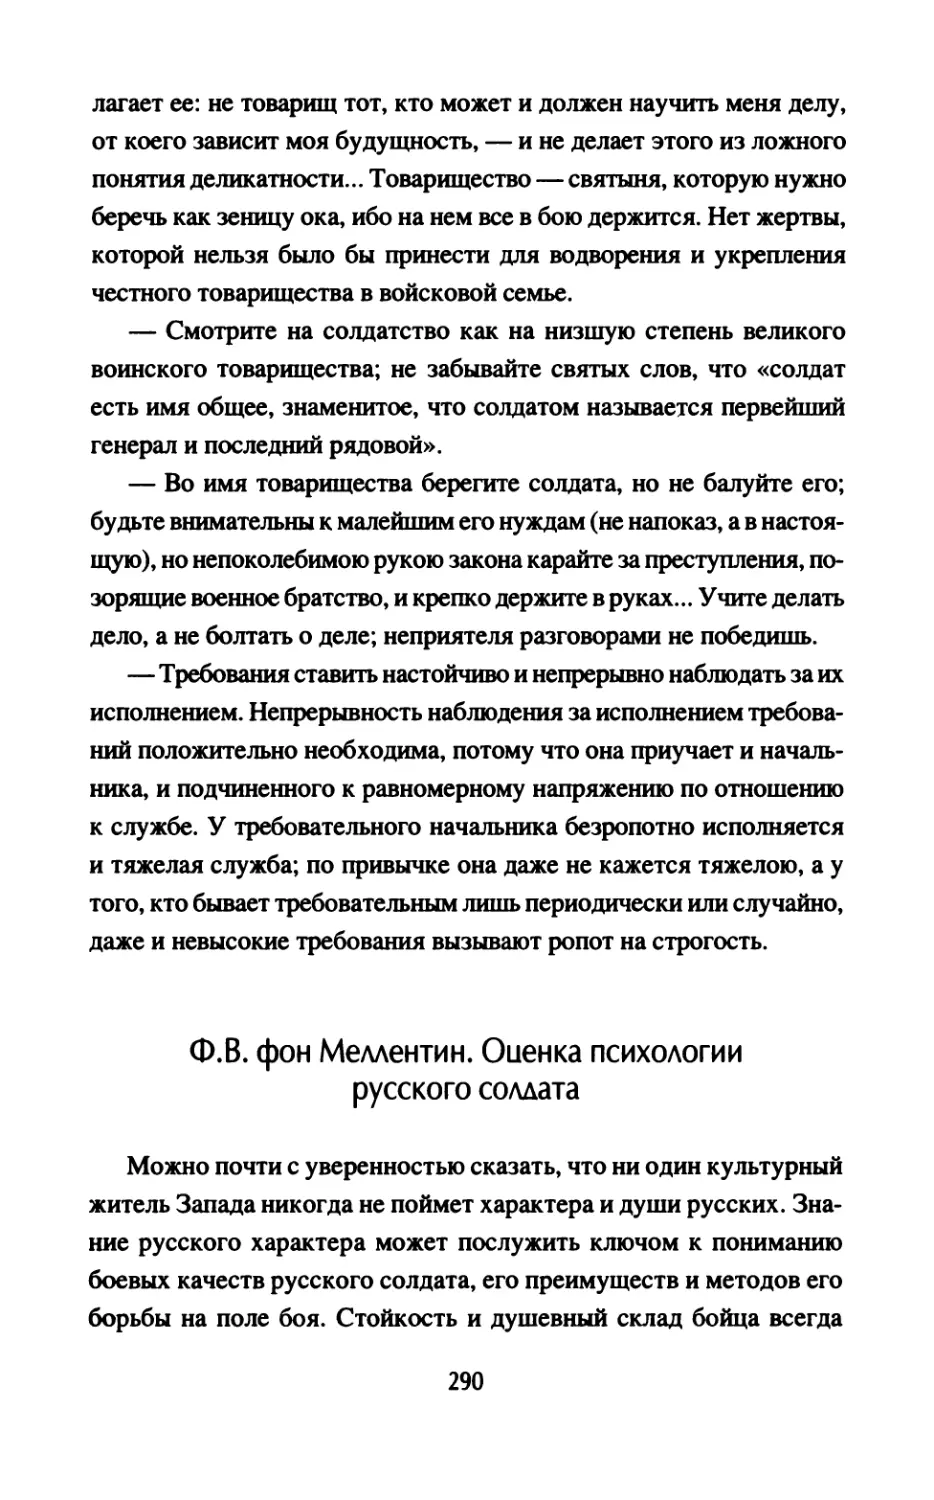 Ф.В. фон Меллентин. Оценка психологии русского солдата